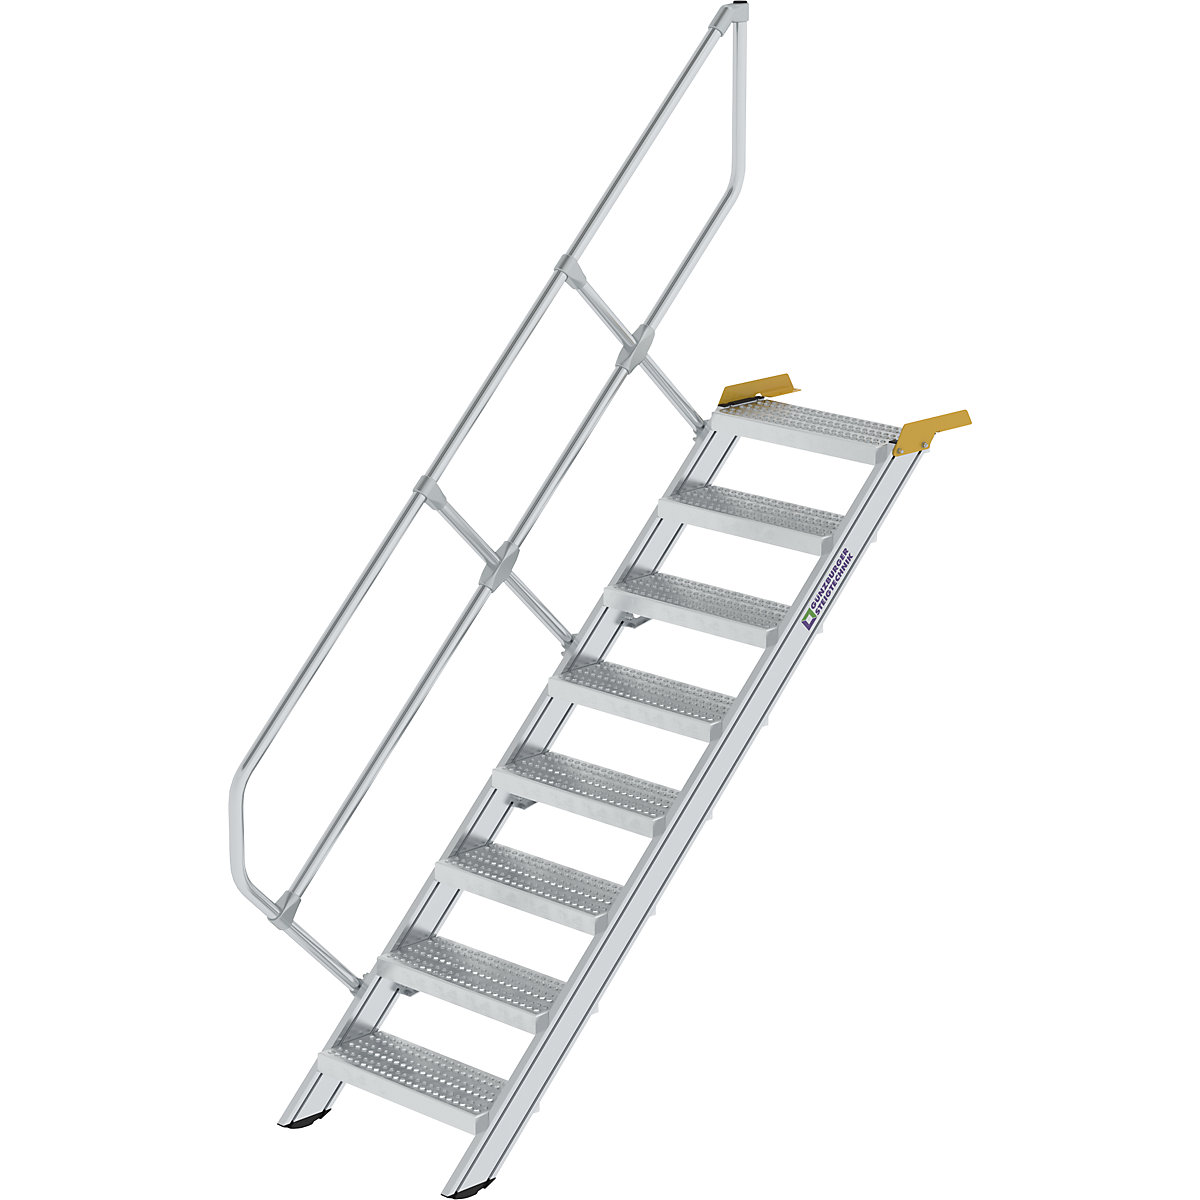 Ipari lépcső – MUNK, perforált lemezes acélfokok, lépcsőfokok szélessége 600 mm, 8 lépcsőfok-4